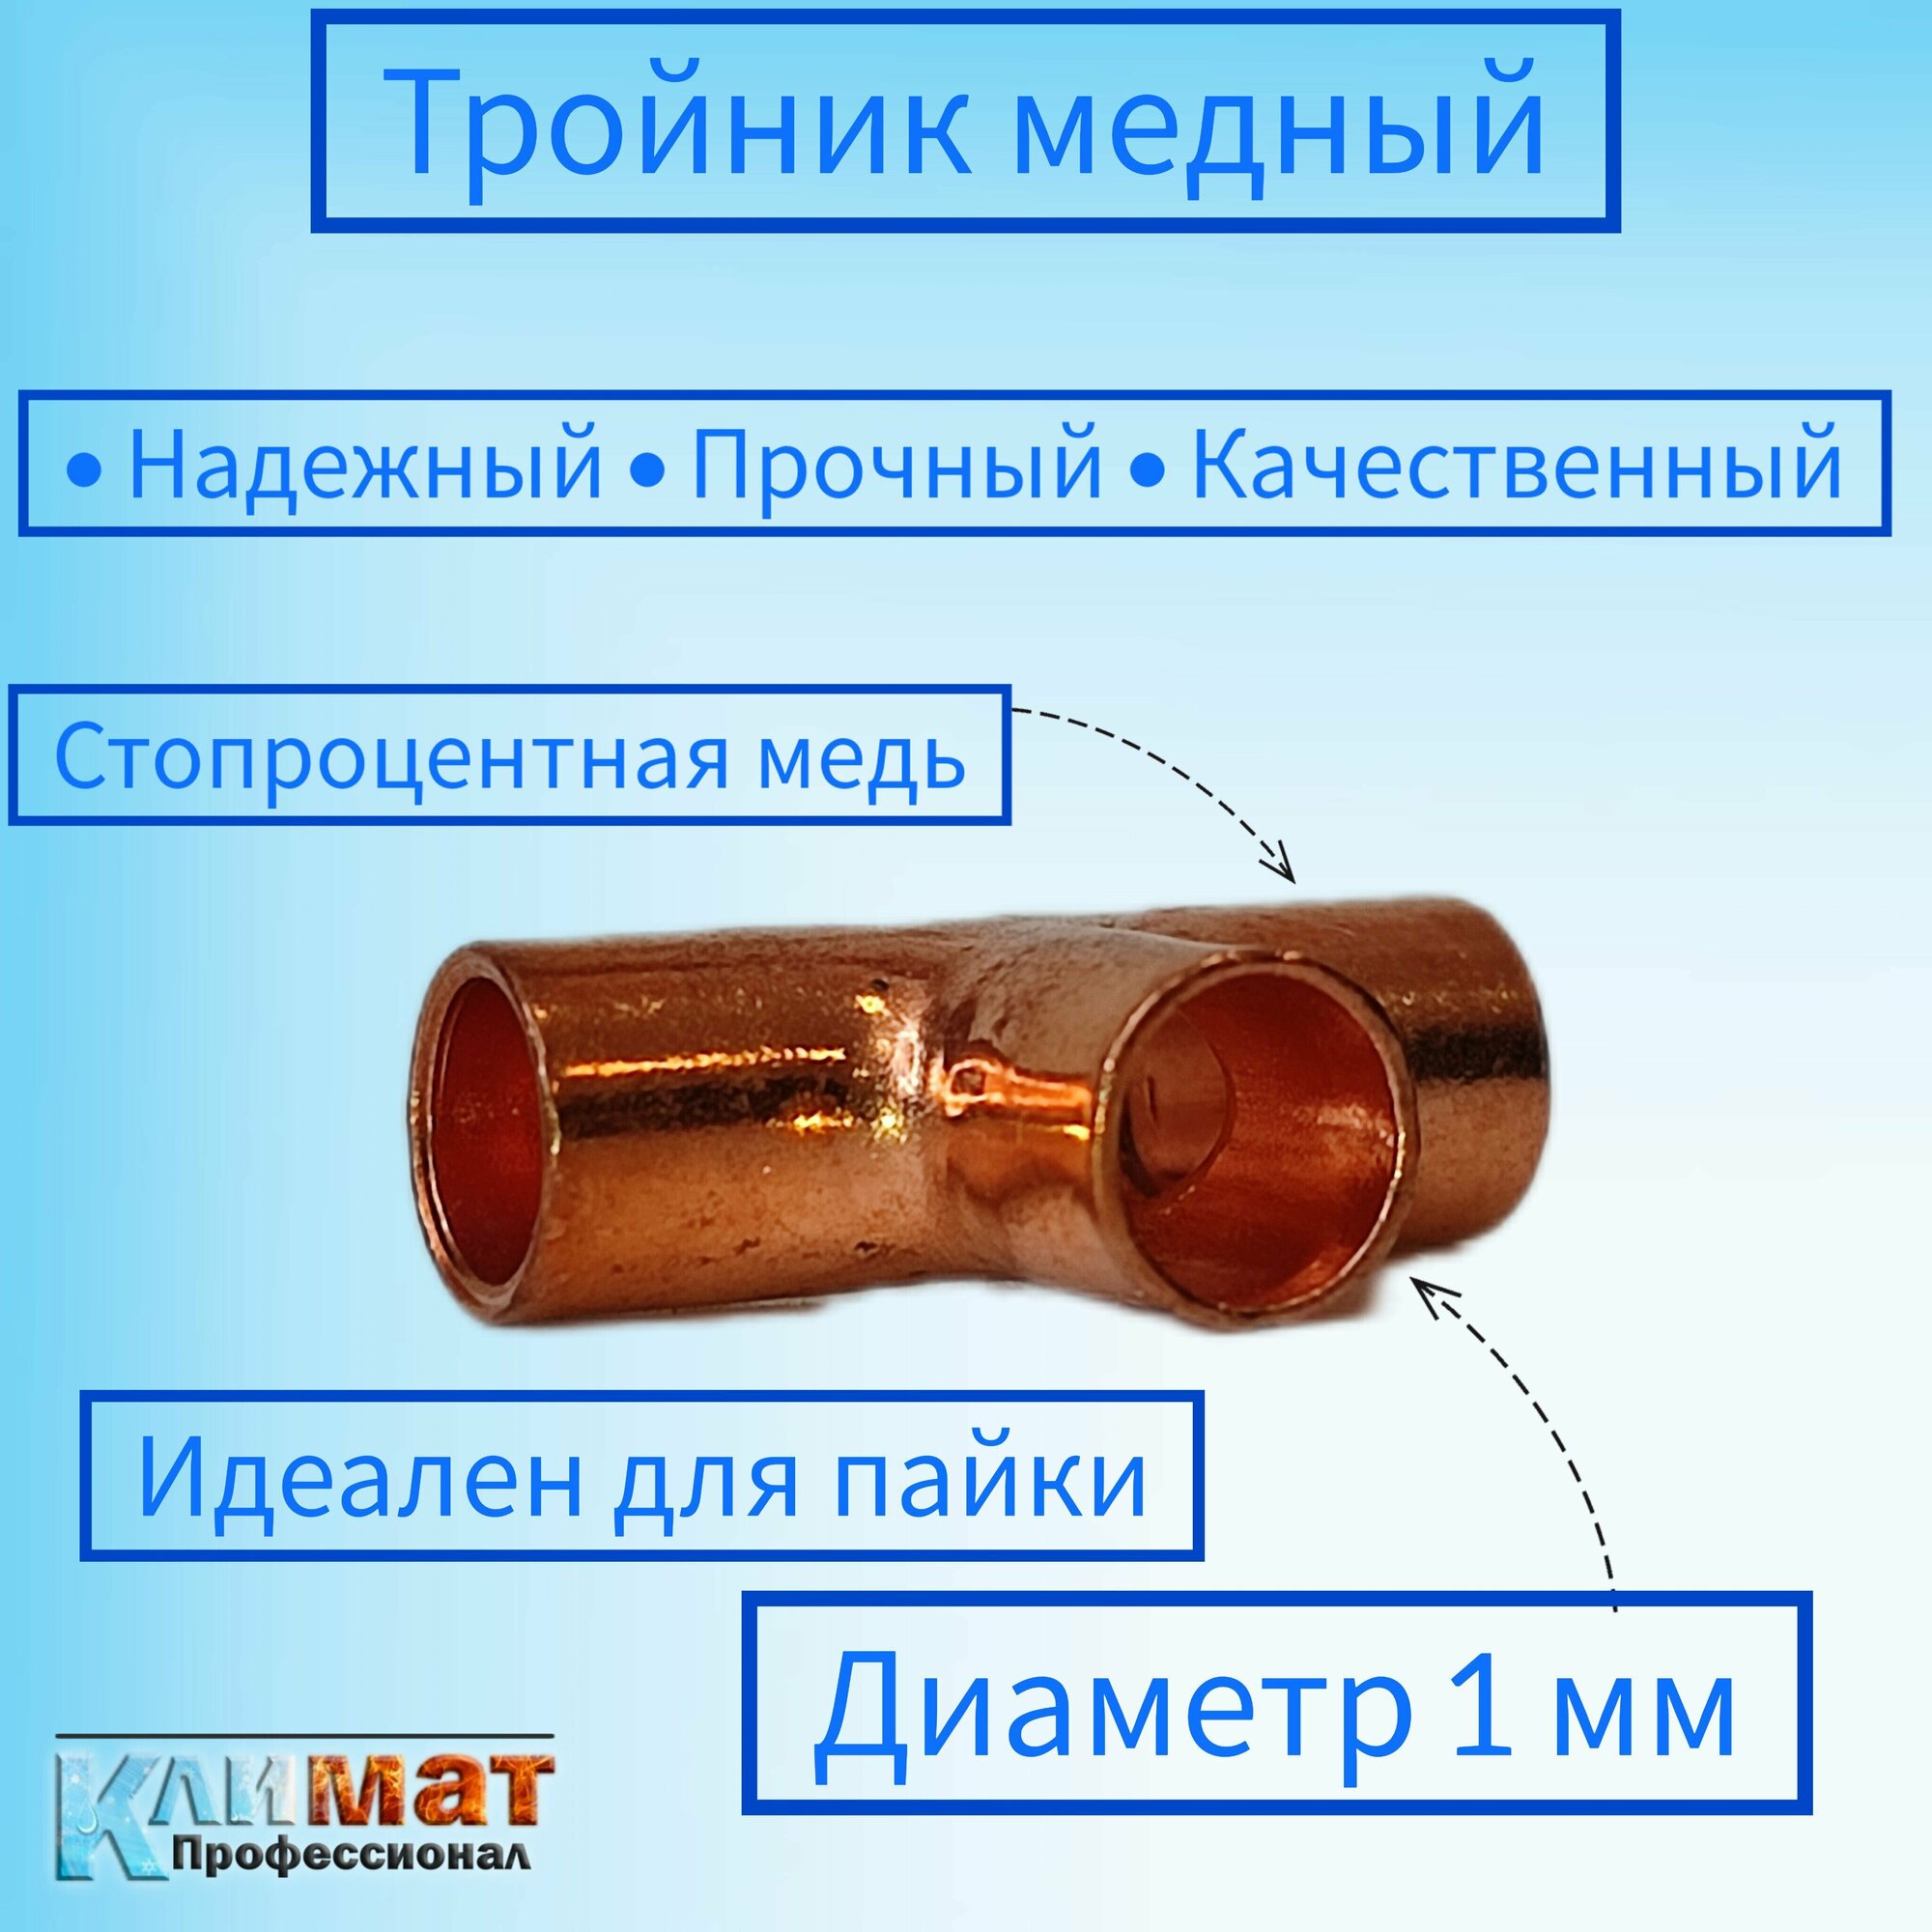 Тройник медный под пайку 3/4" (19,05 мм) / тройник для пайки медных труб